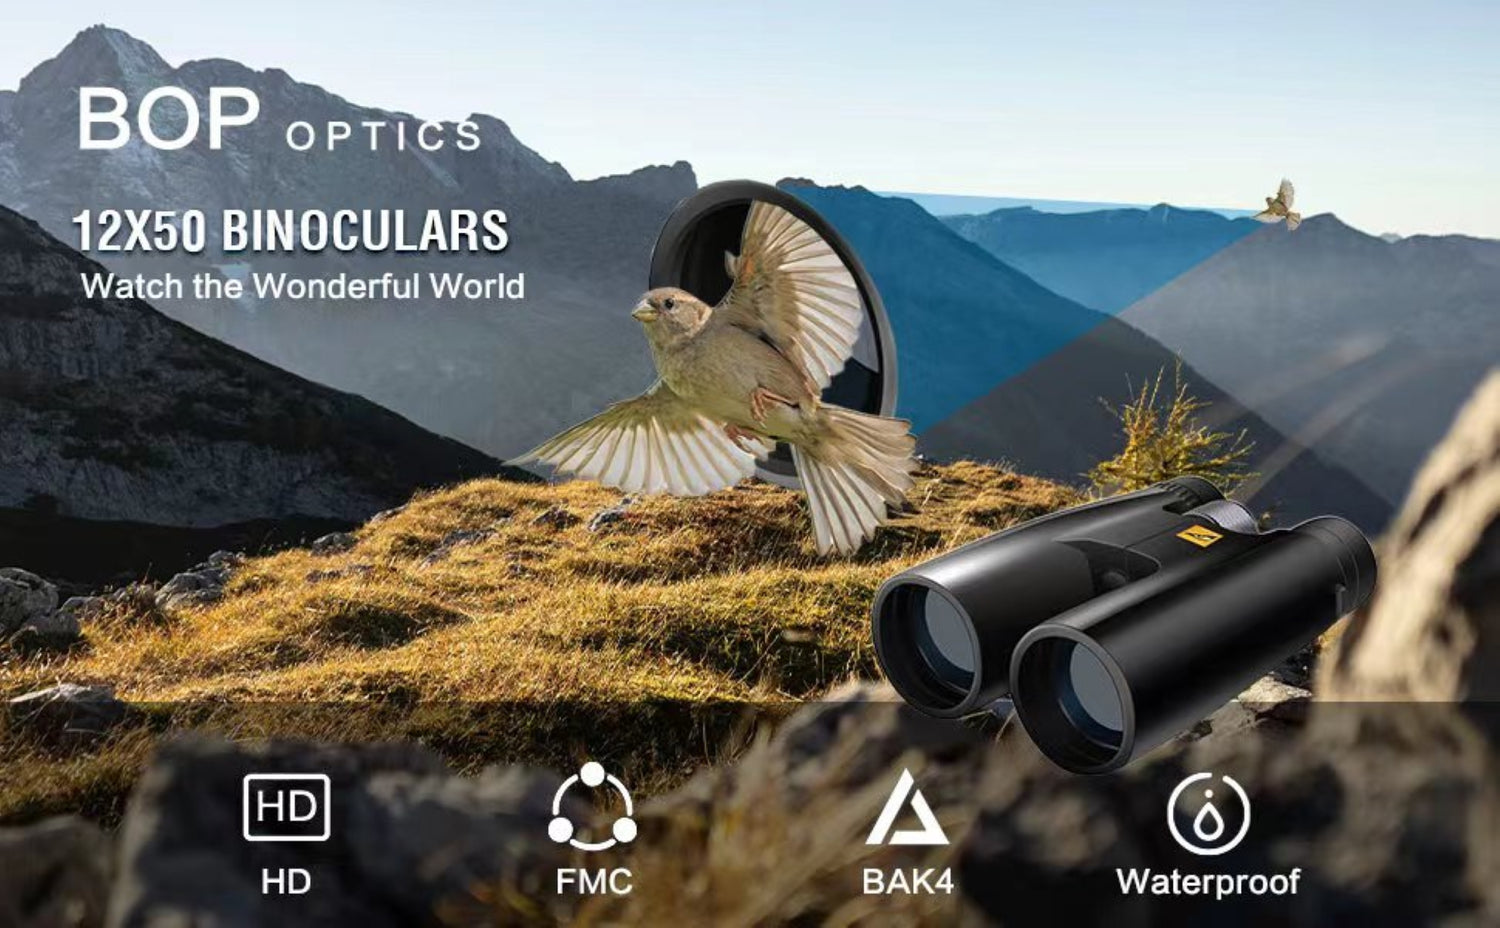 HD Waterproof 12x50 Binoculars with BAK4 Prism